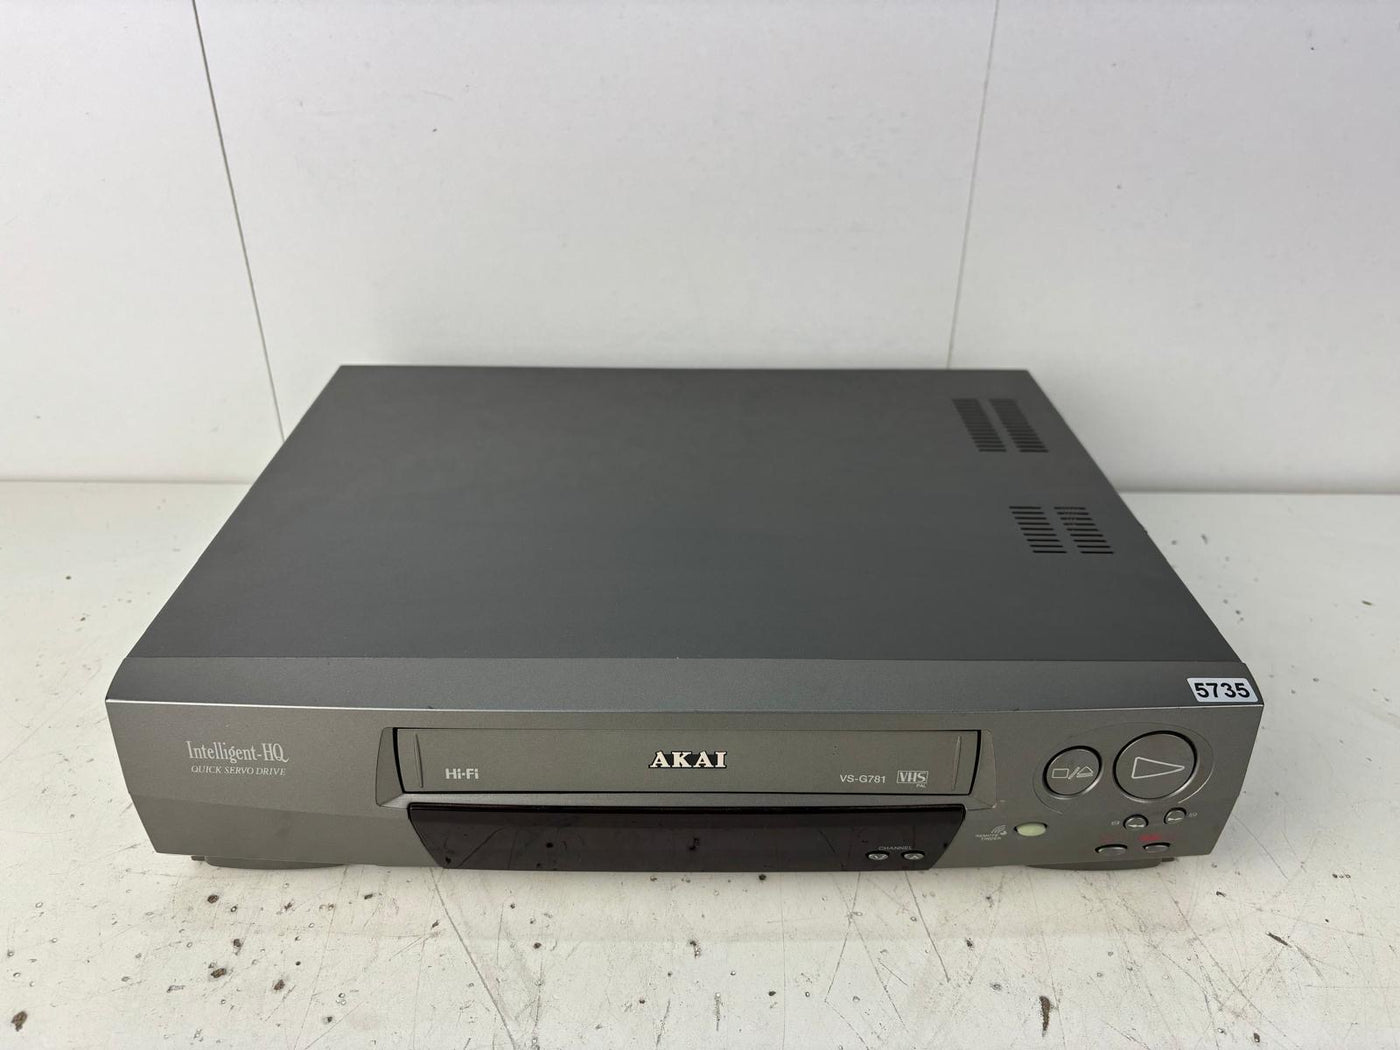 Akai VS-G781 Video Cassette Recorder